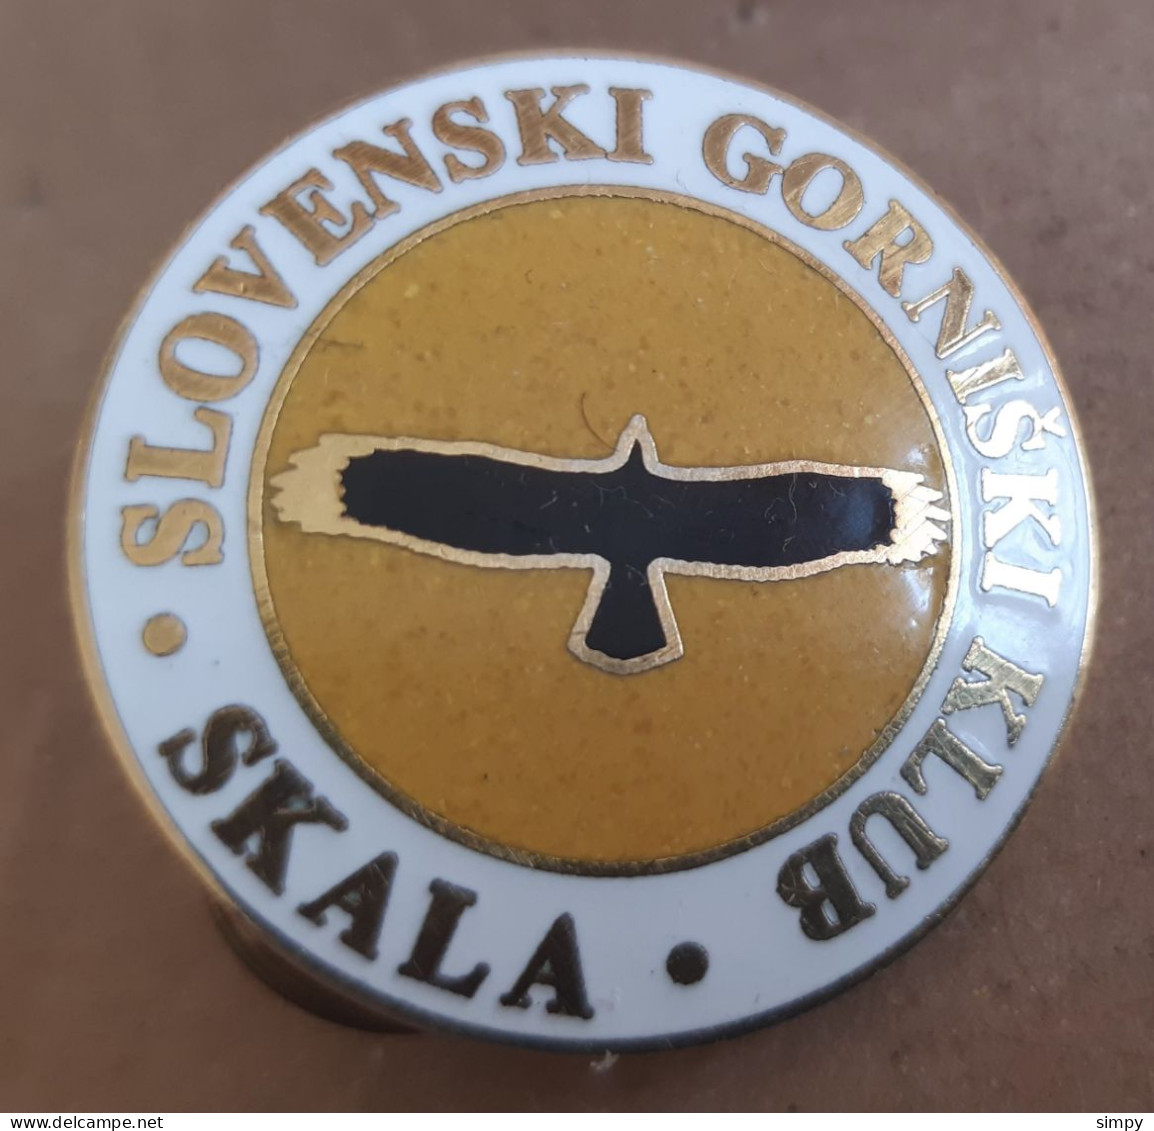 Mountaineering Club Slovenski Gorniski Klub SKALA Enamel Pin Badge Slovenia - Alpinismo, Escalada